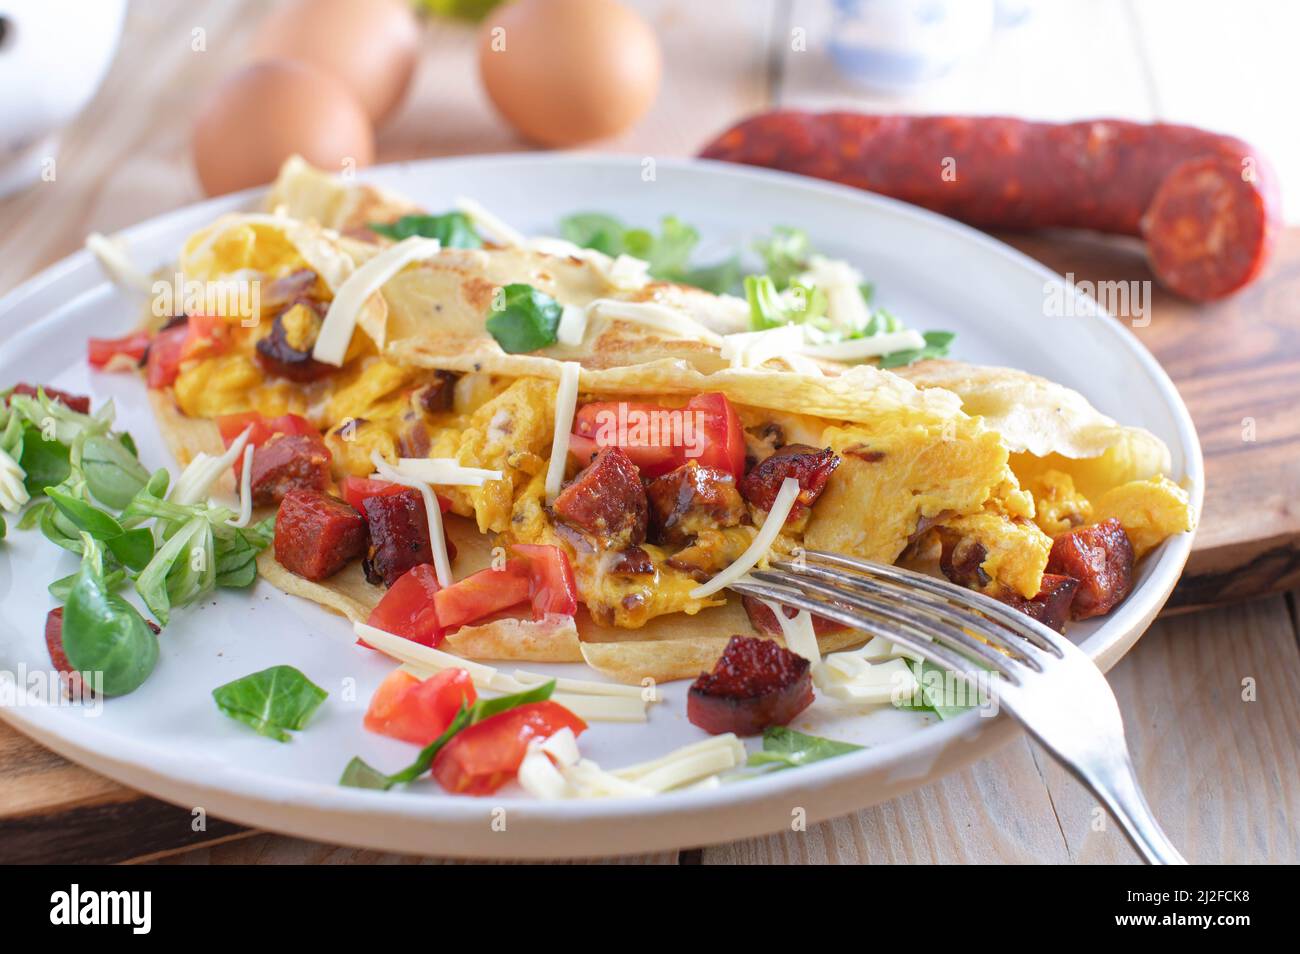 Crepe oder Pfannkuchen gefüllt mit Rührei, Tomaten, Käse und gebratener Chorizo-Salami. Serviert auf einem Teller für ein herzhaftes Frühstück Stockfoto